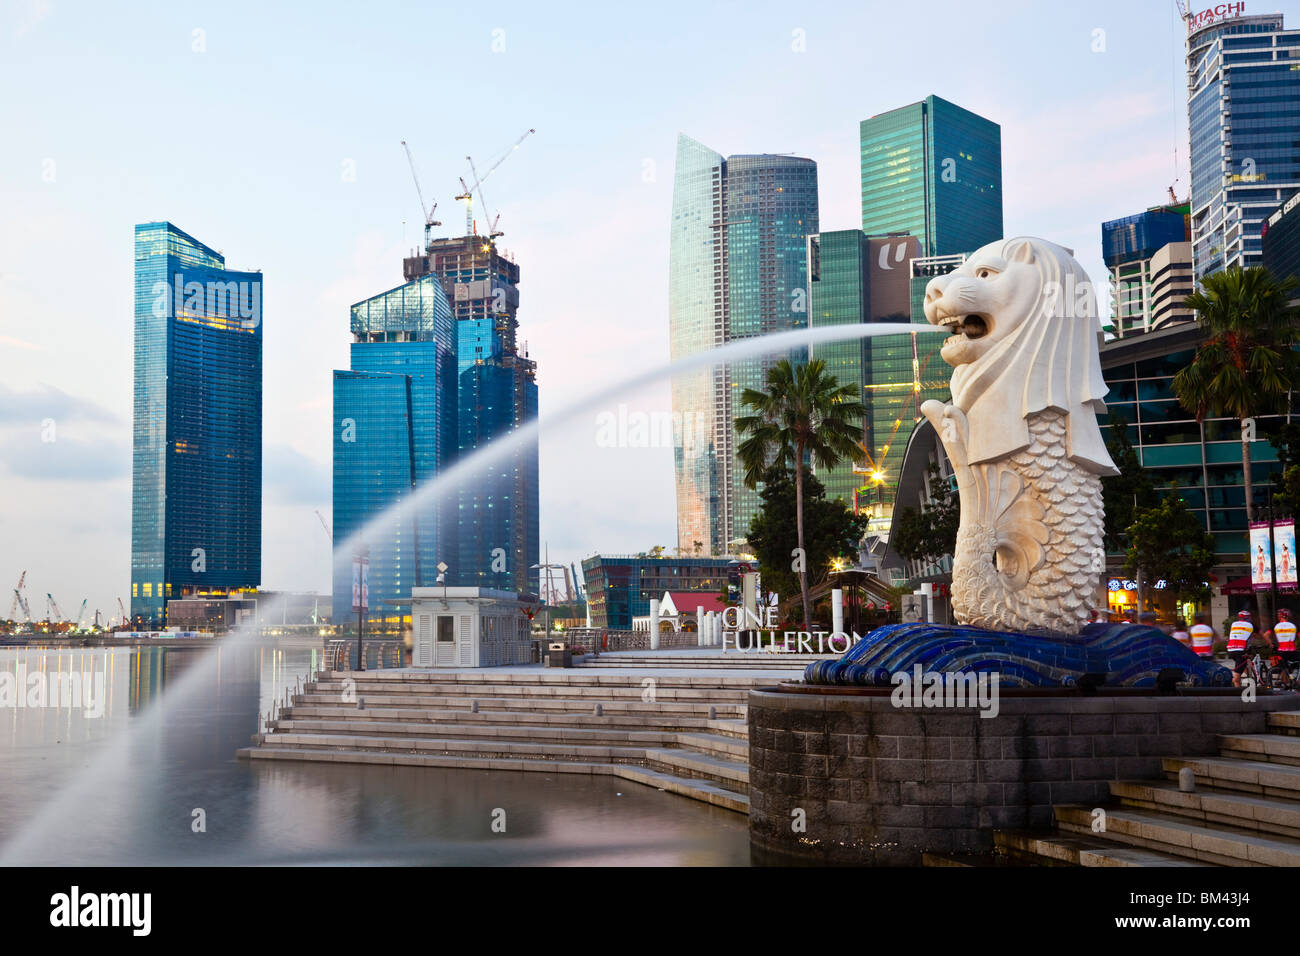 La statua Merlion con lo skyline della città in background, Esplanade, Singapore Foto Stock